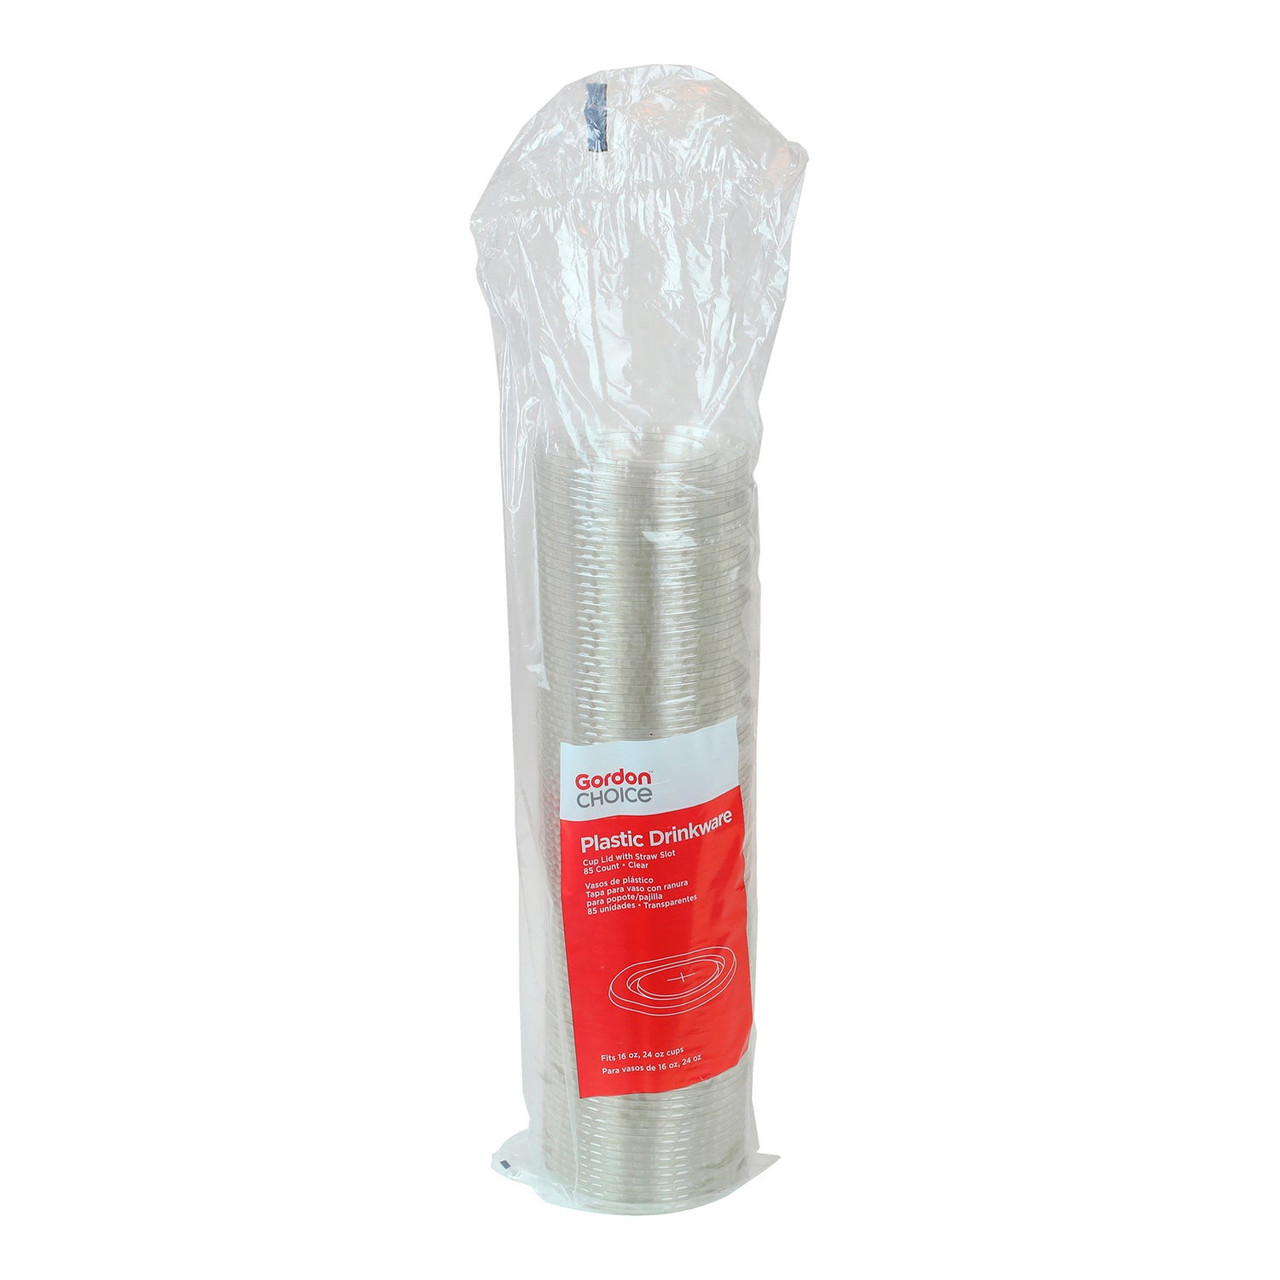 Gordon Choice Flat Clear Plastic Straw Slot Lids, For 16-24oz Cups | 85UN/Unit, 12 Units/Case